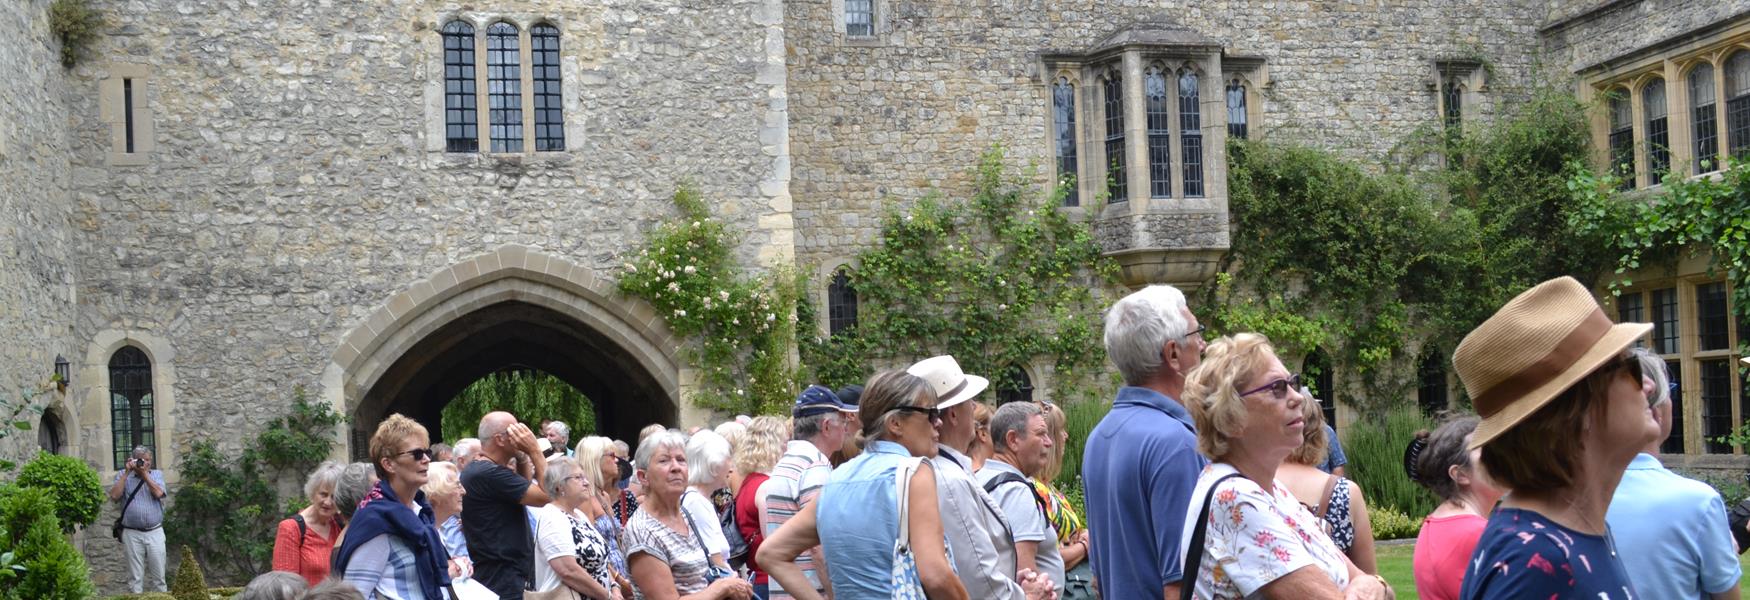 Kentish Lady's Allington Castle Tour